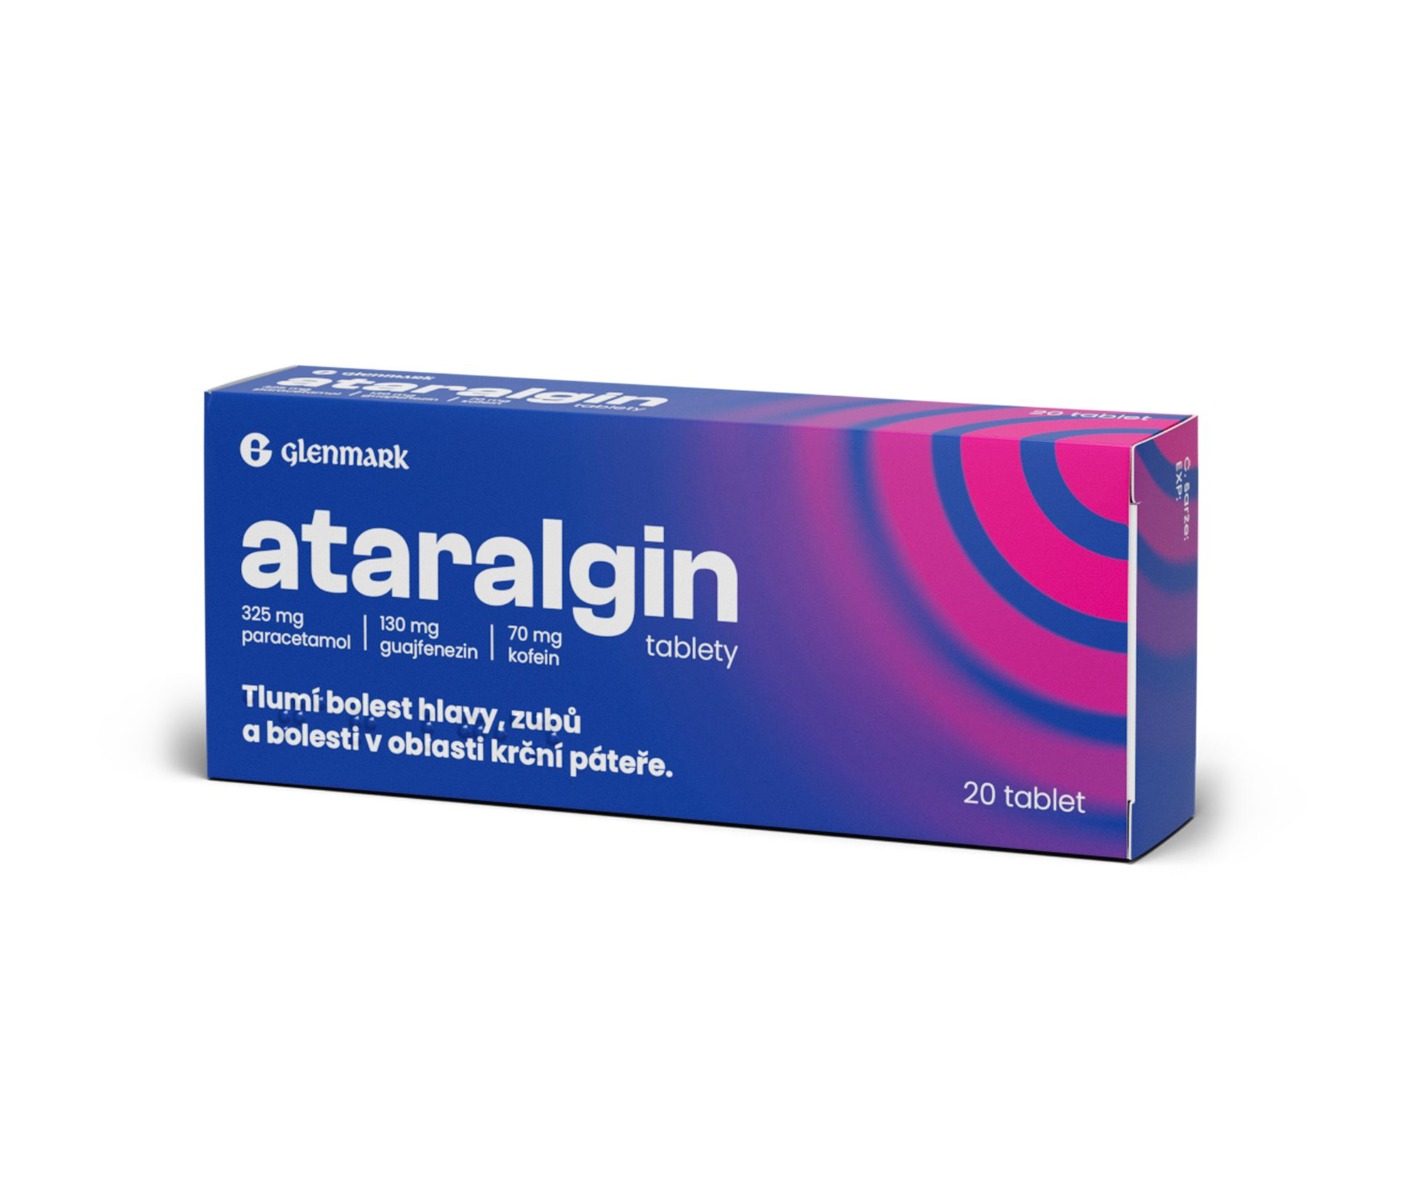 Ataralgin 20 tablet Ataralgin